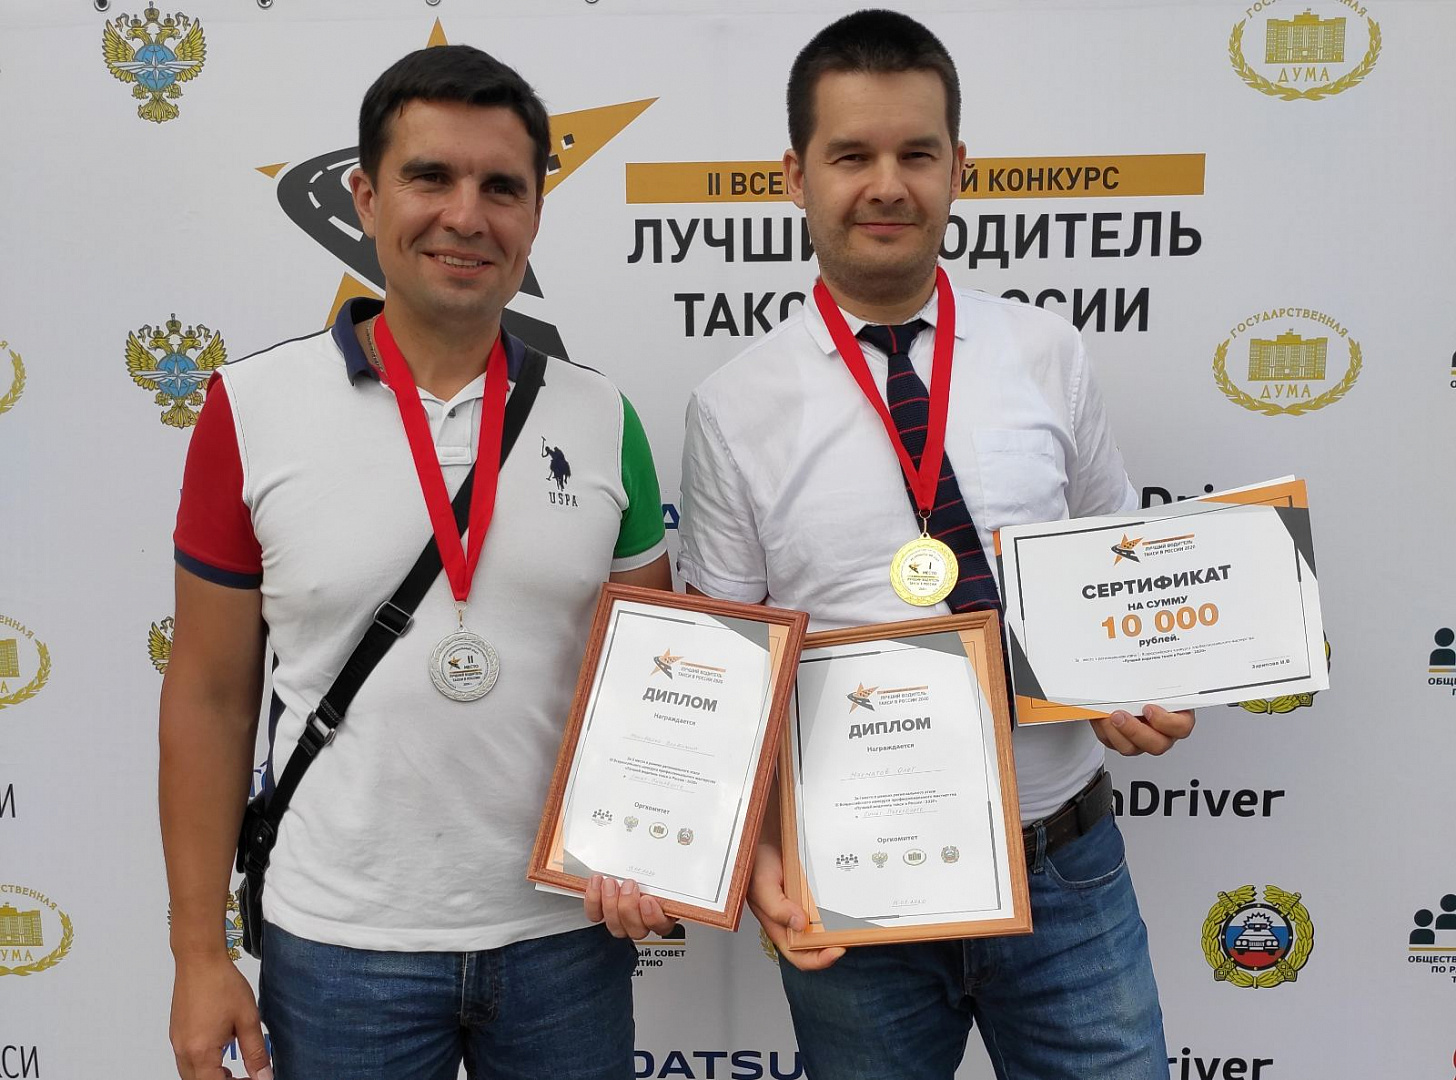 Водители «Таксовичкоф» стали призерами конкурса «Лучший водитель такси в России - 2020»